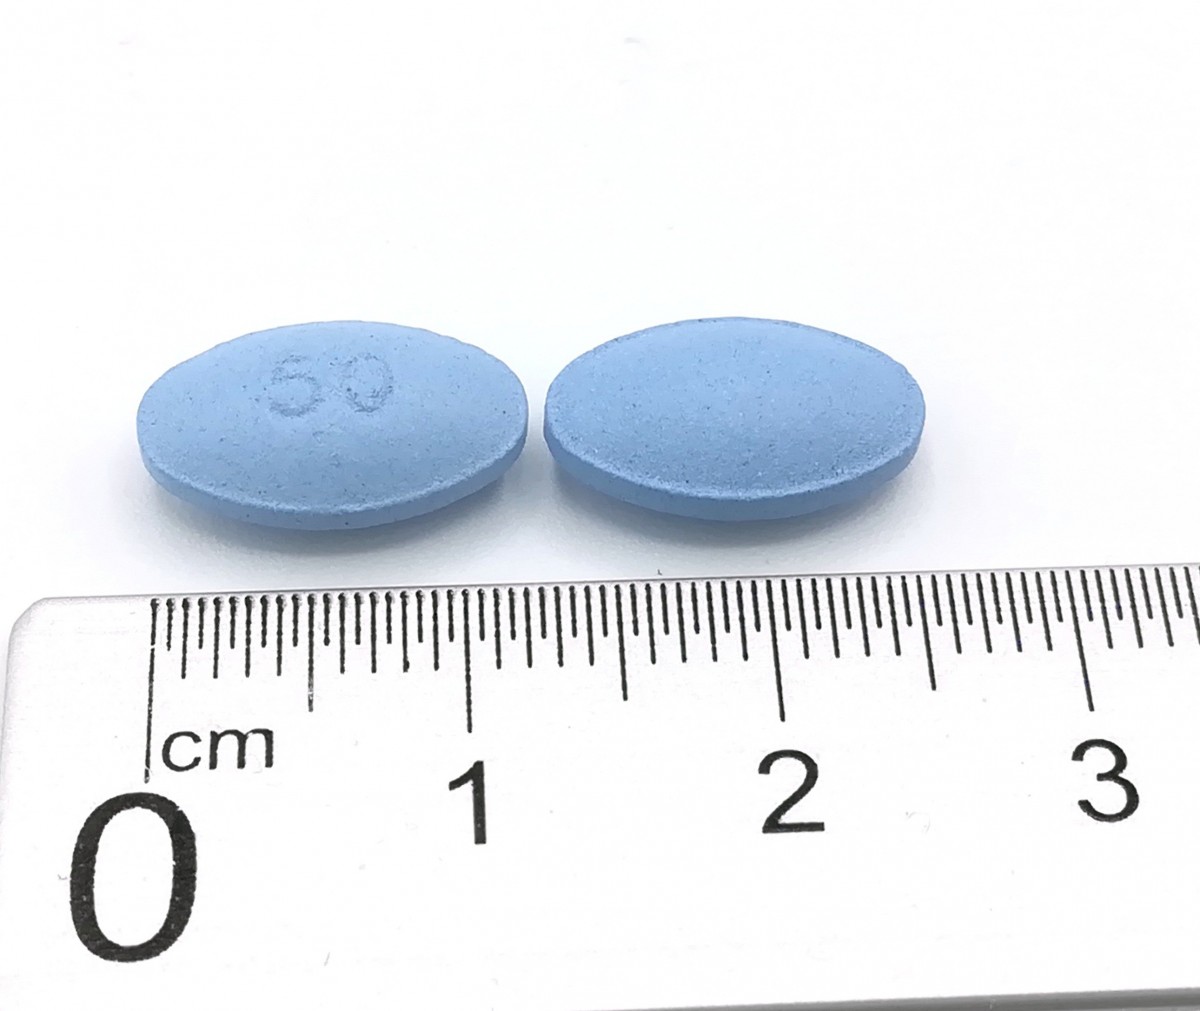 GALOTAM 50 mg COMPRIMIDOS RECUBIERTOS CON PELICULA EFG, 8 comprimidos fotografía de la forma farmacéutica.